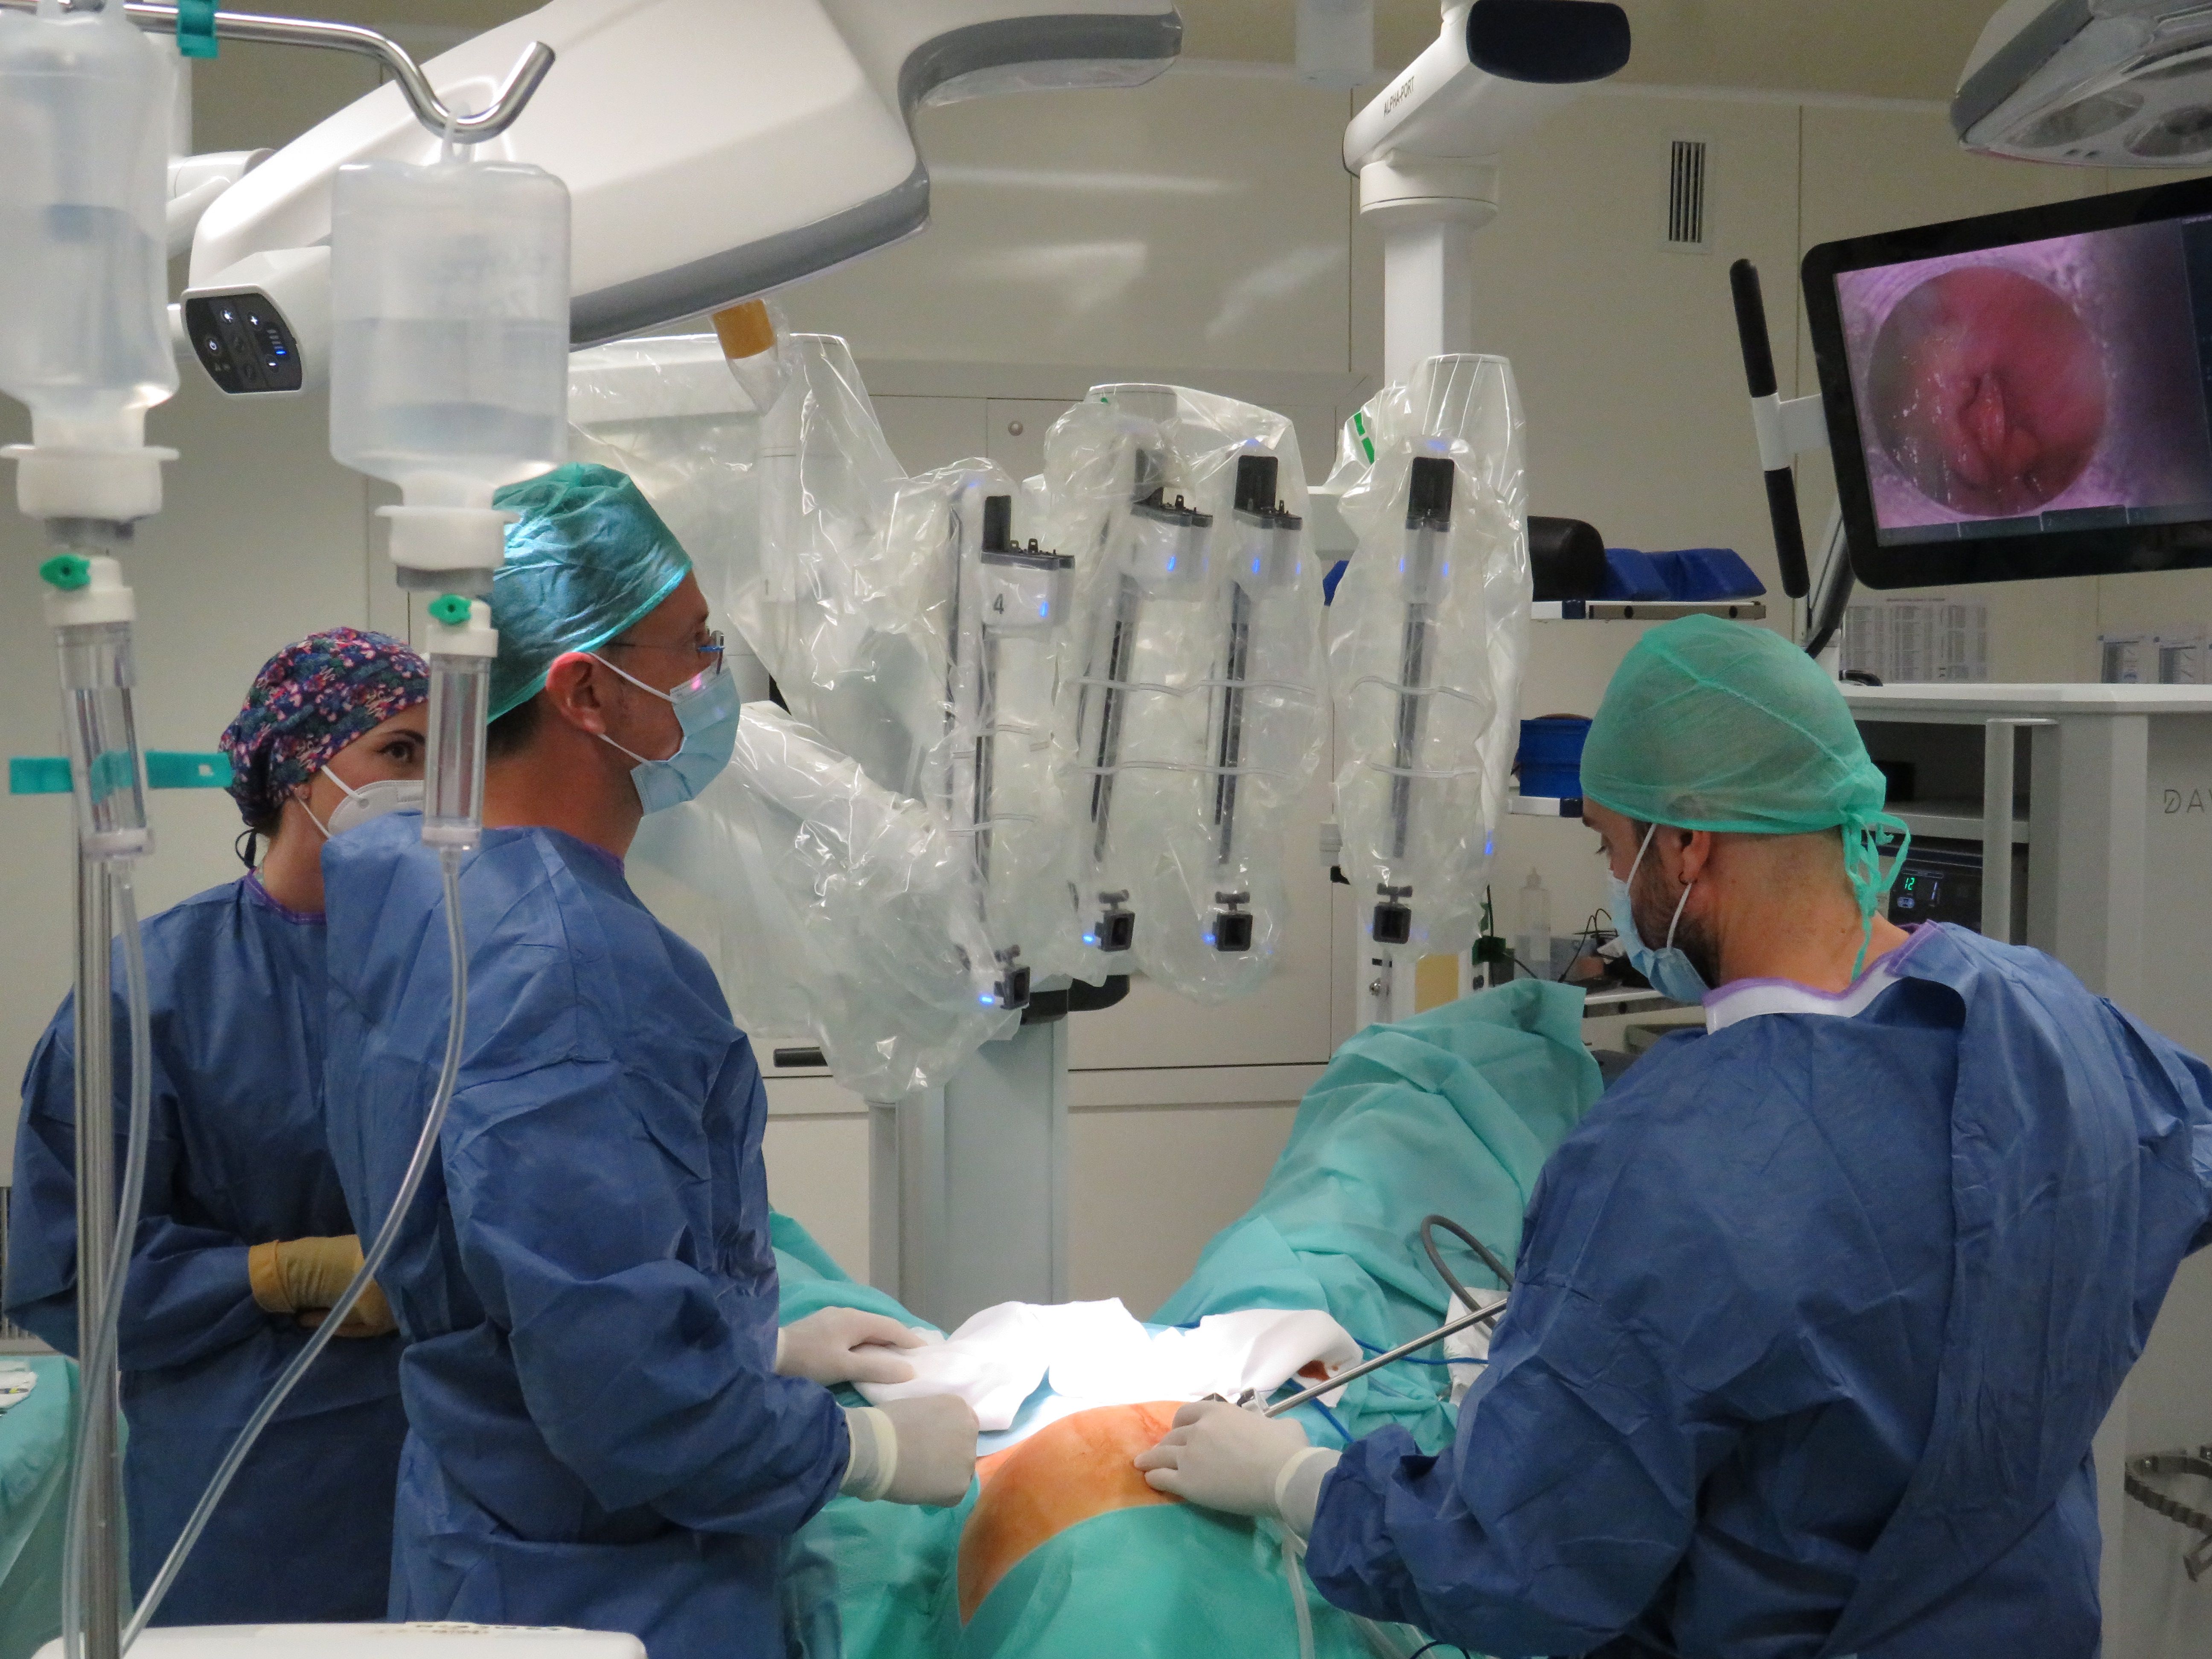 El sistema de ABEX Excelencia Robótica se revela como la plataforma más innovadora en la actualidad para cirugía mínimamente invasiva. | L.N.C.